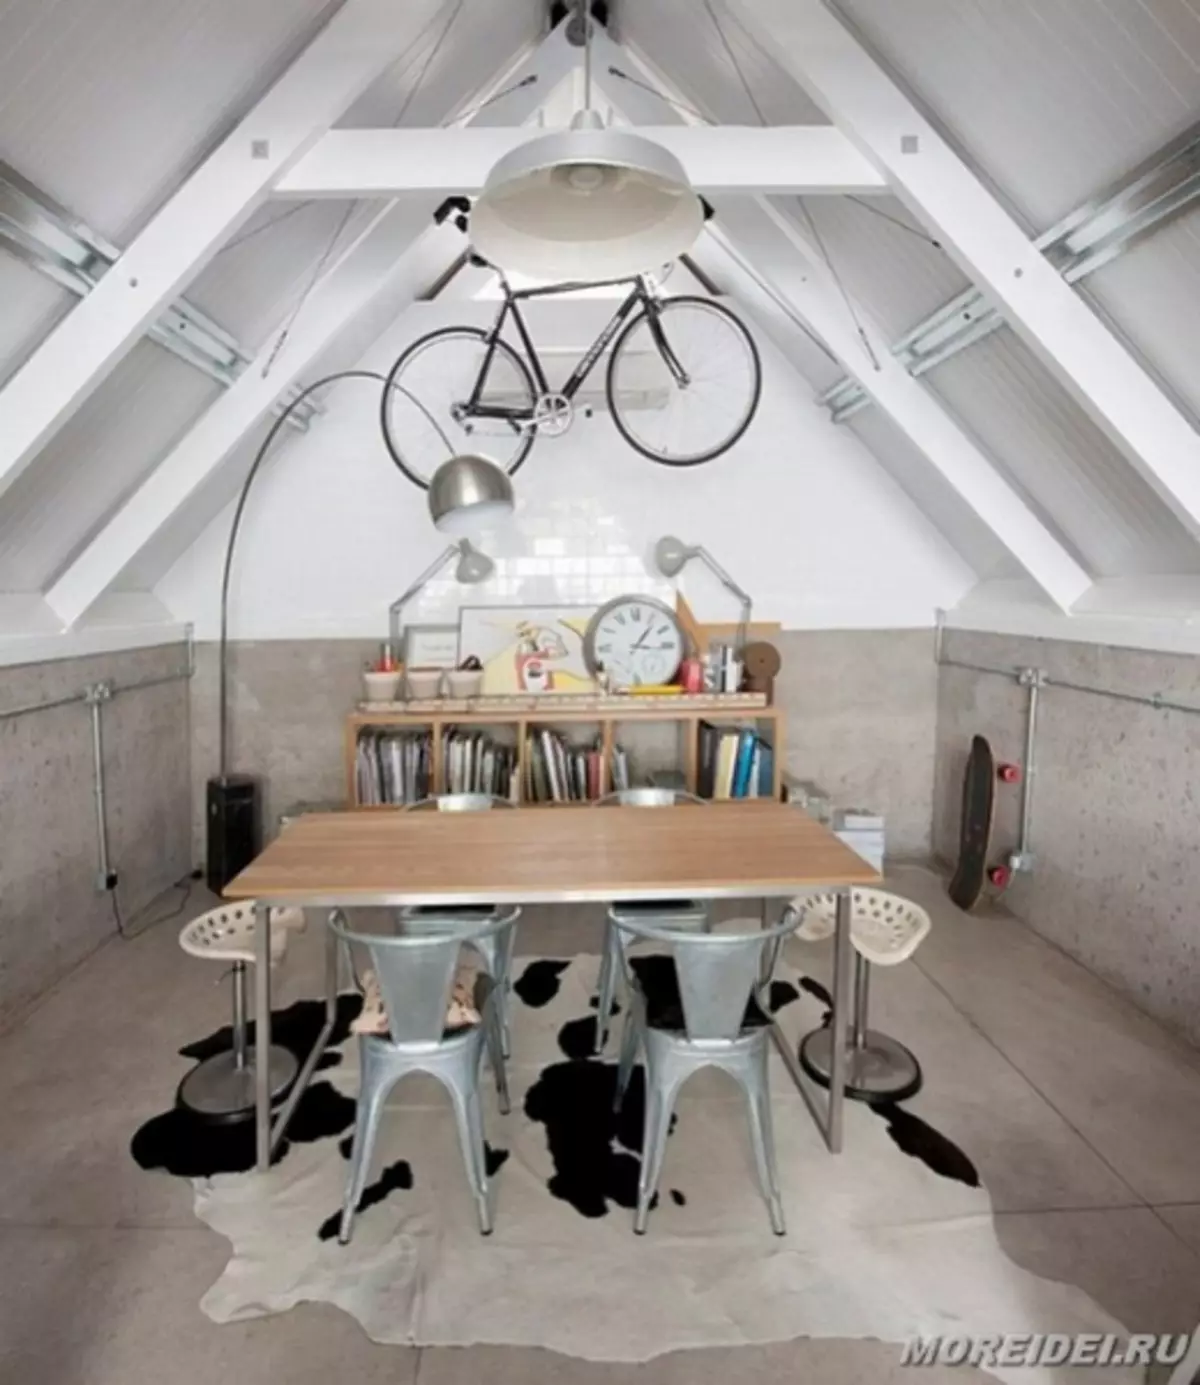 Magazinimi i biçikletave në apartament - 25 ide kreative